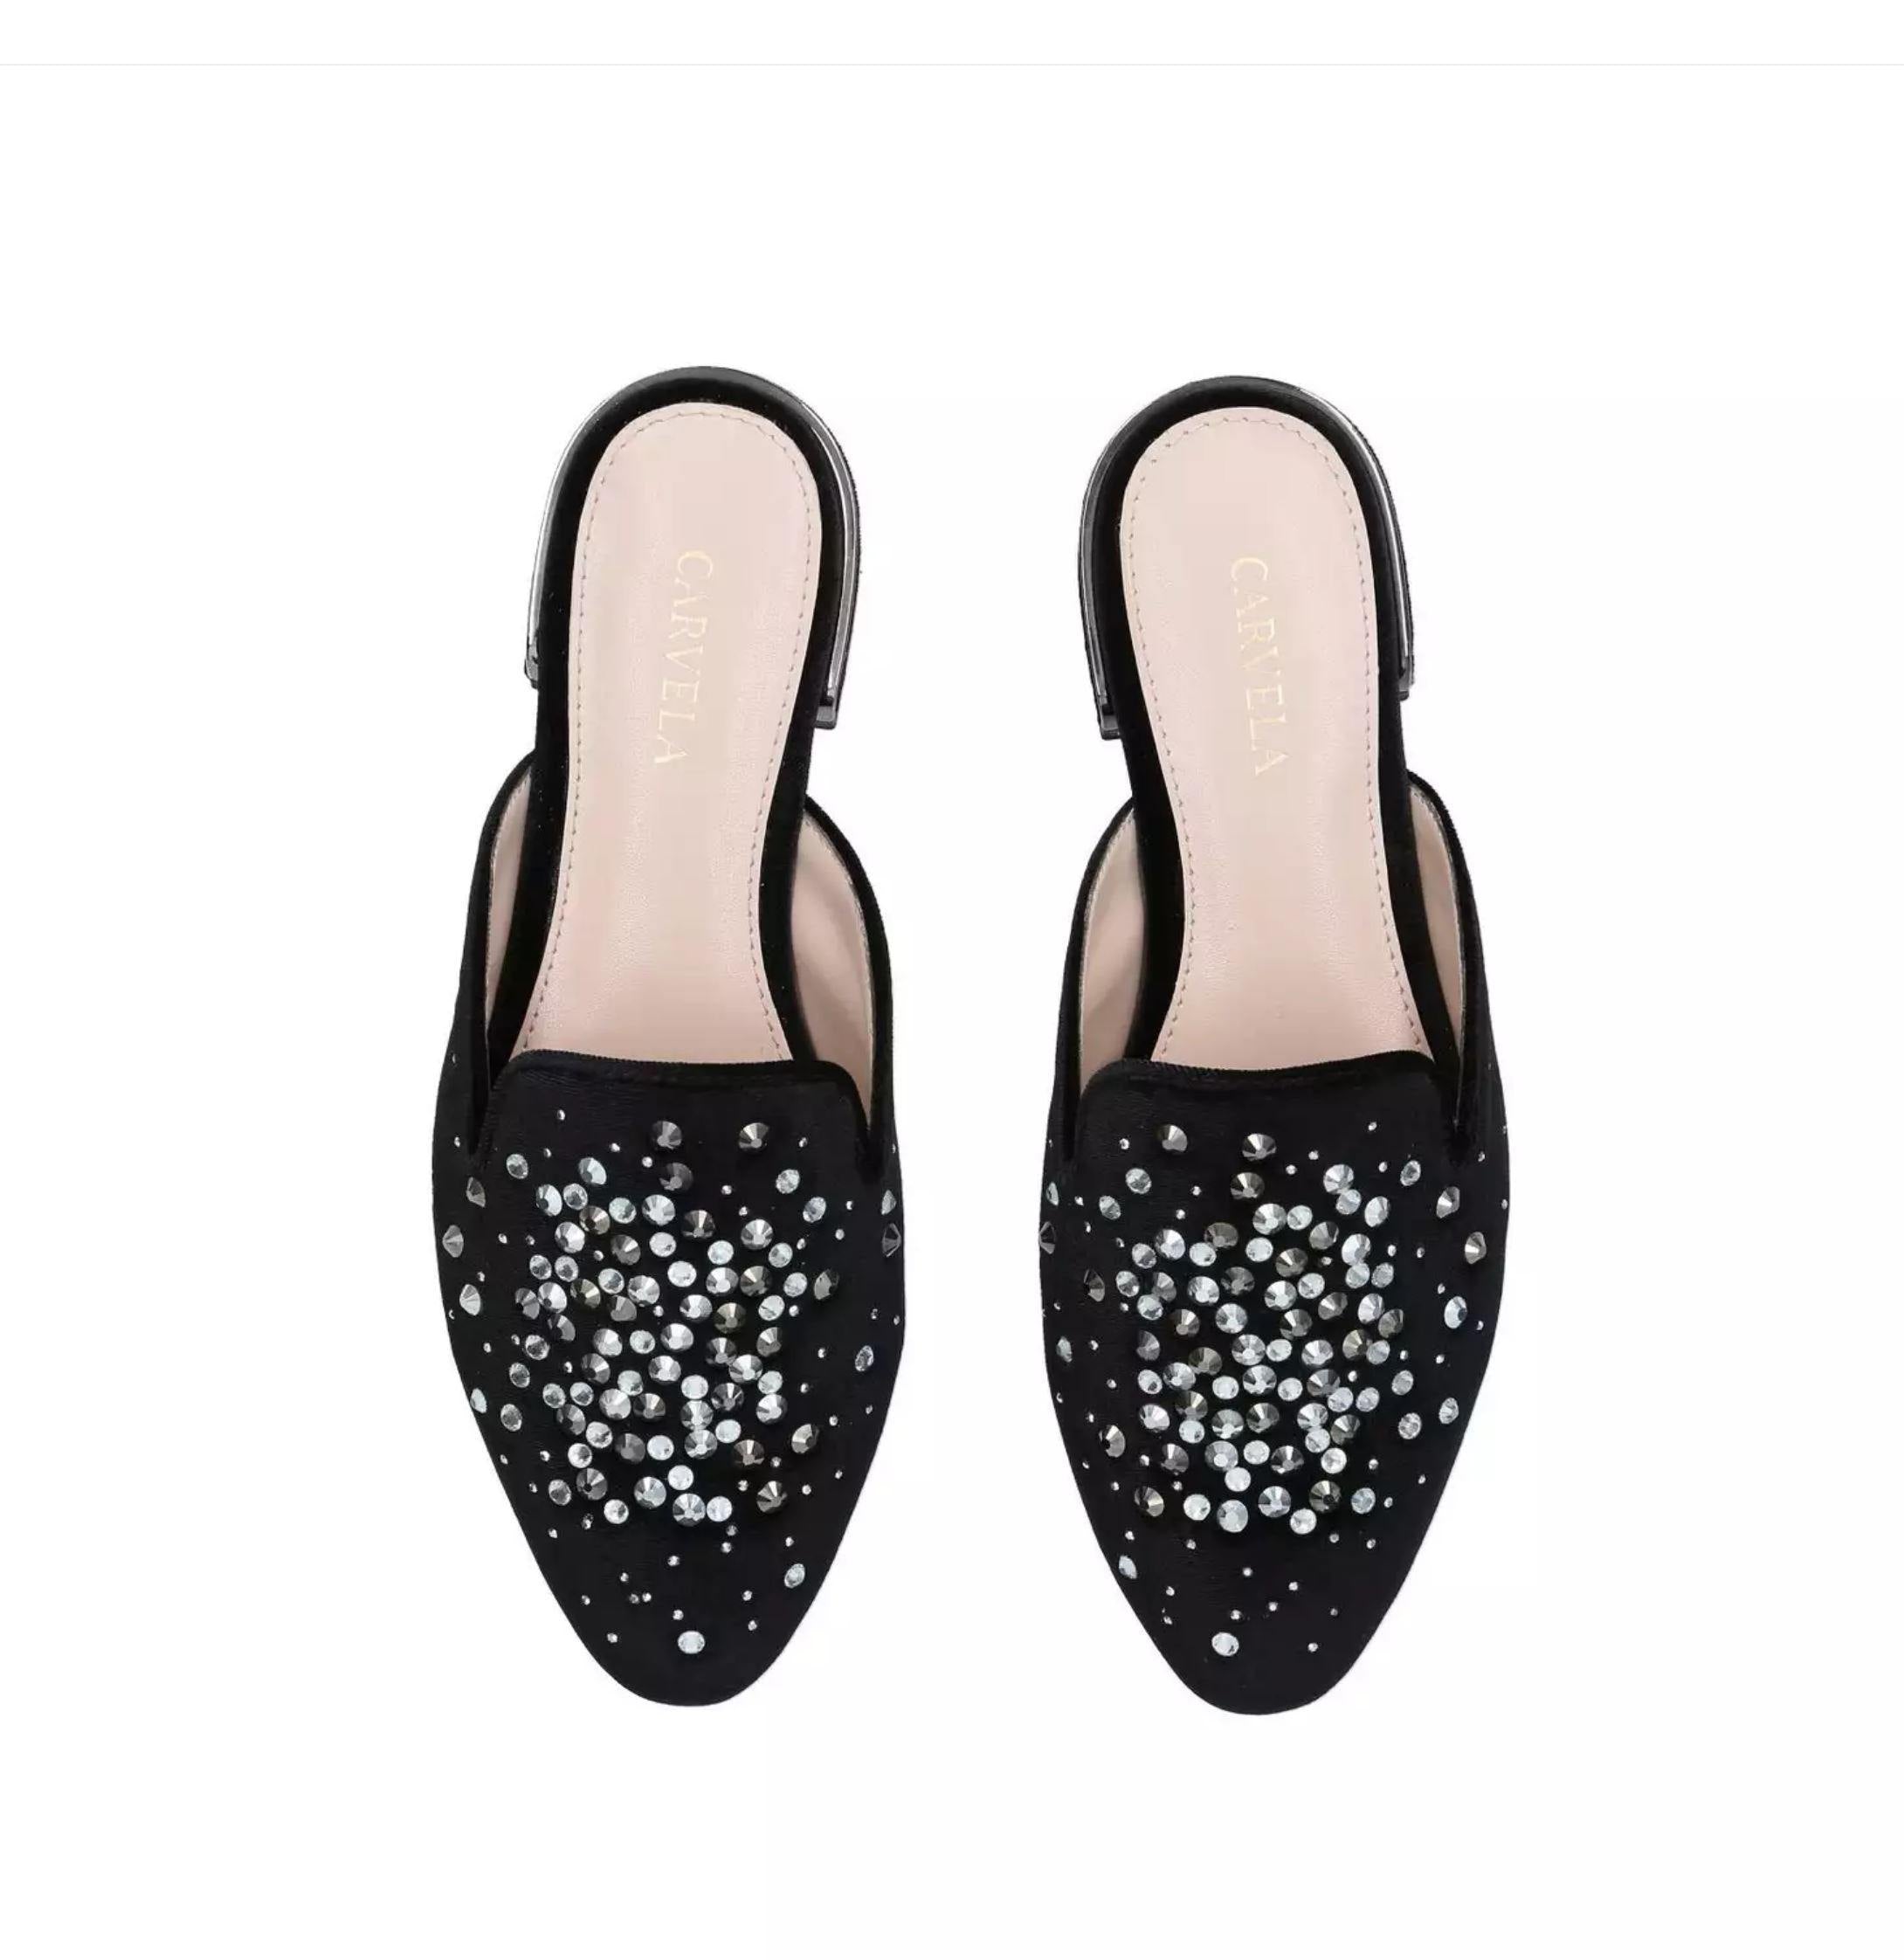 Lattifa Black Embellished Slip On Mules By Carvela Shoes Foxyavenue UK